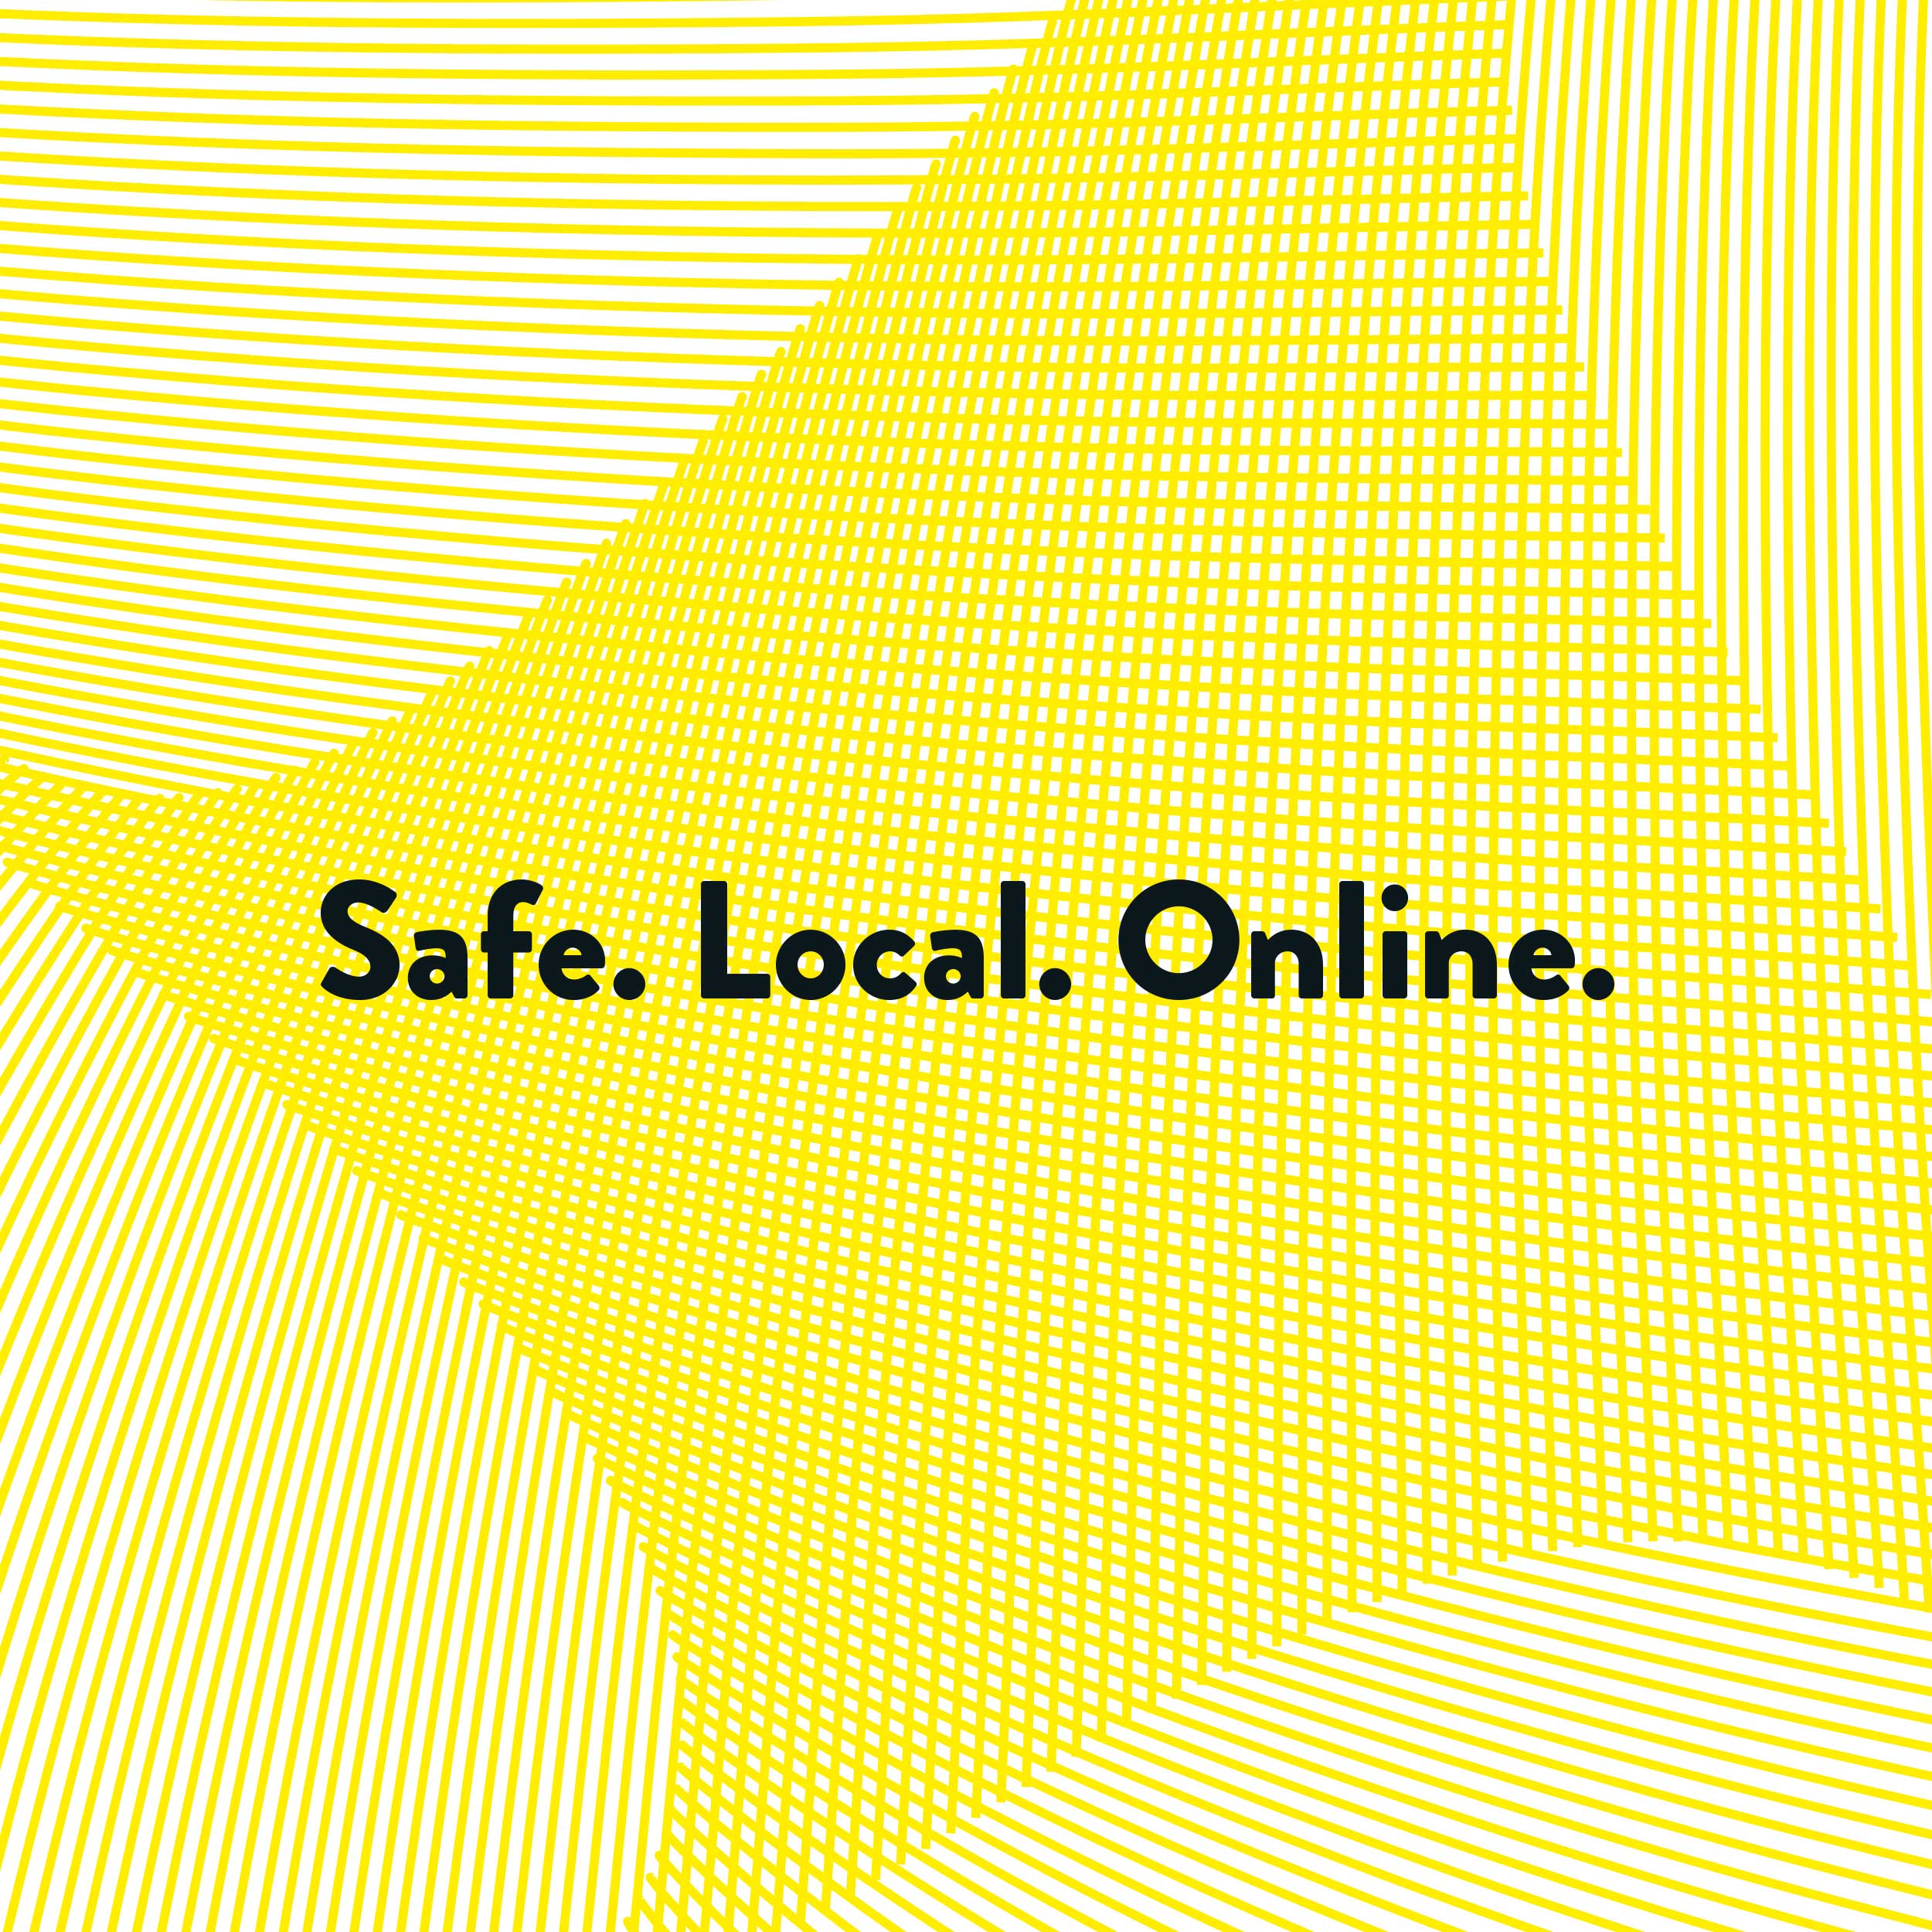 Gelber Hintergrund mit der Aufschrift Safe.Local.Online